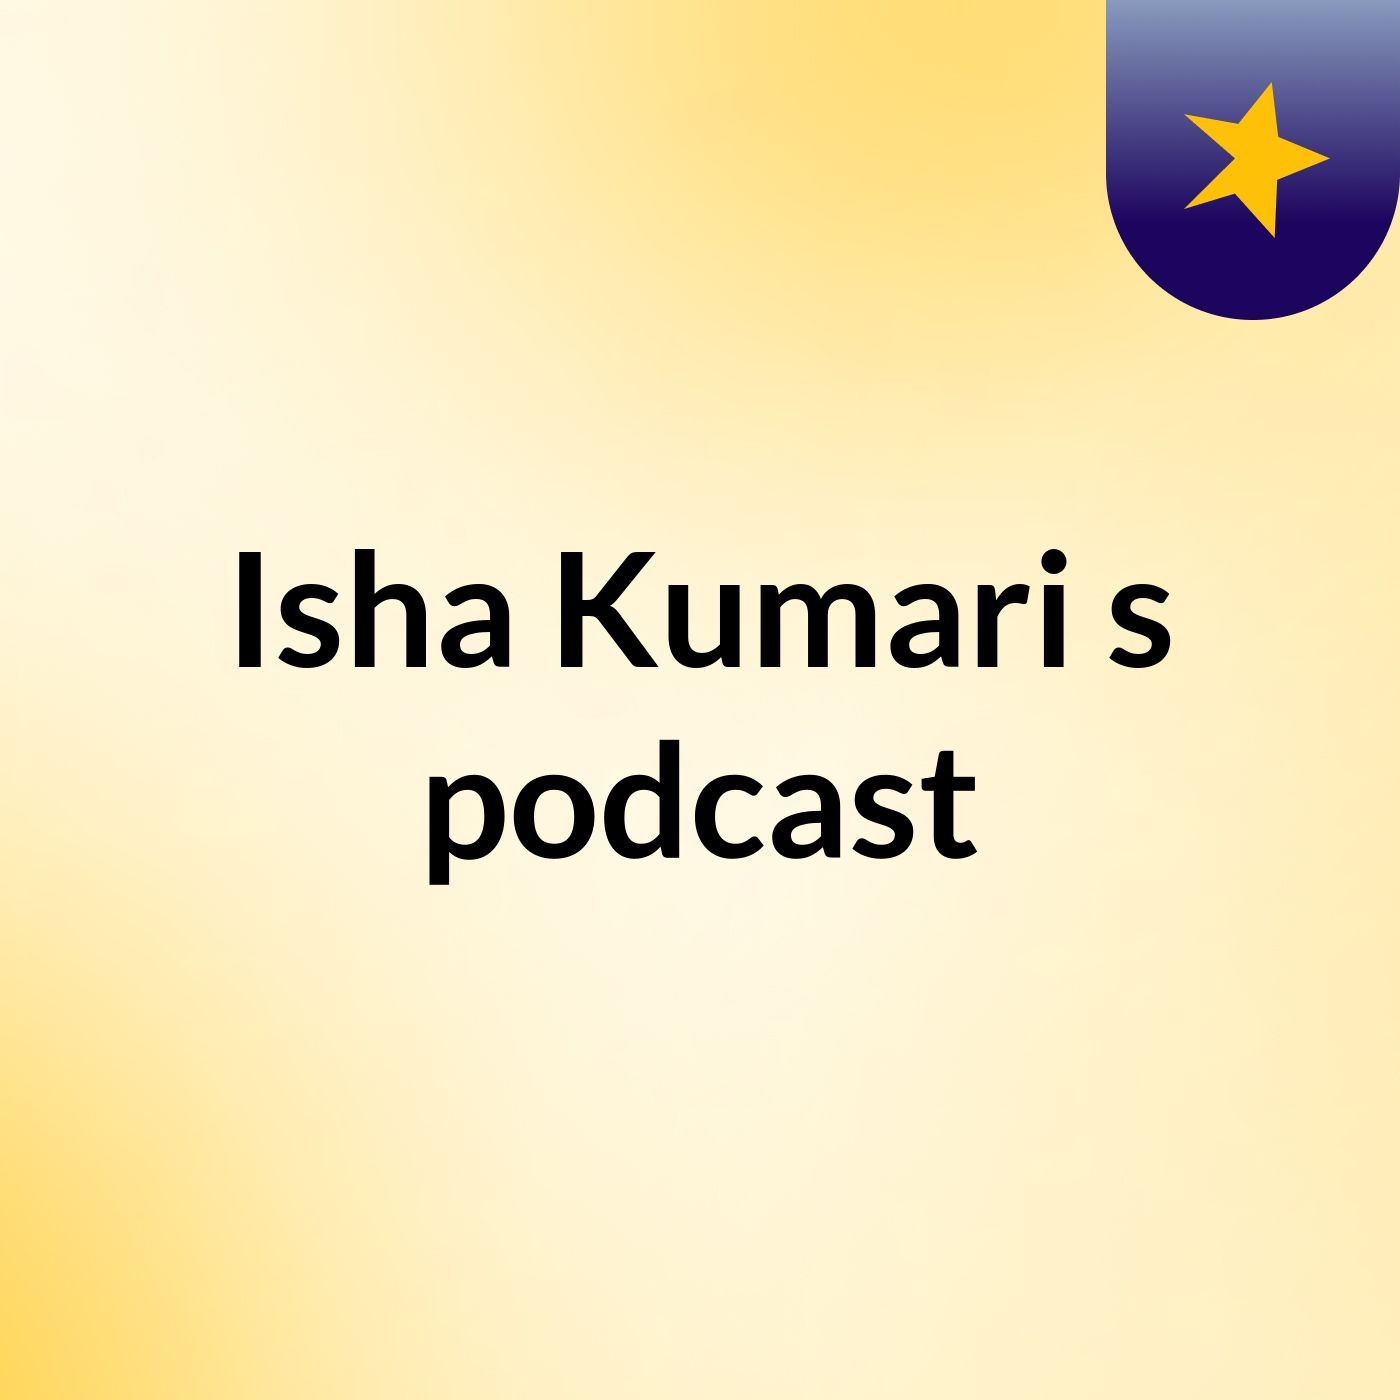 Isha Kumari's podcast